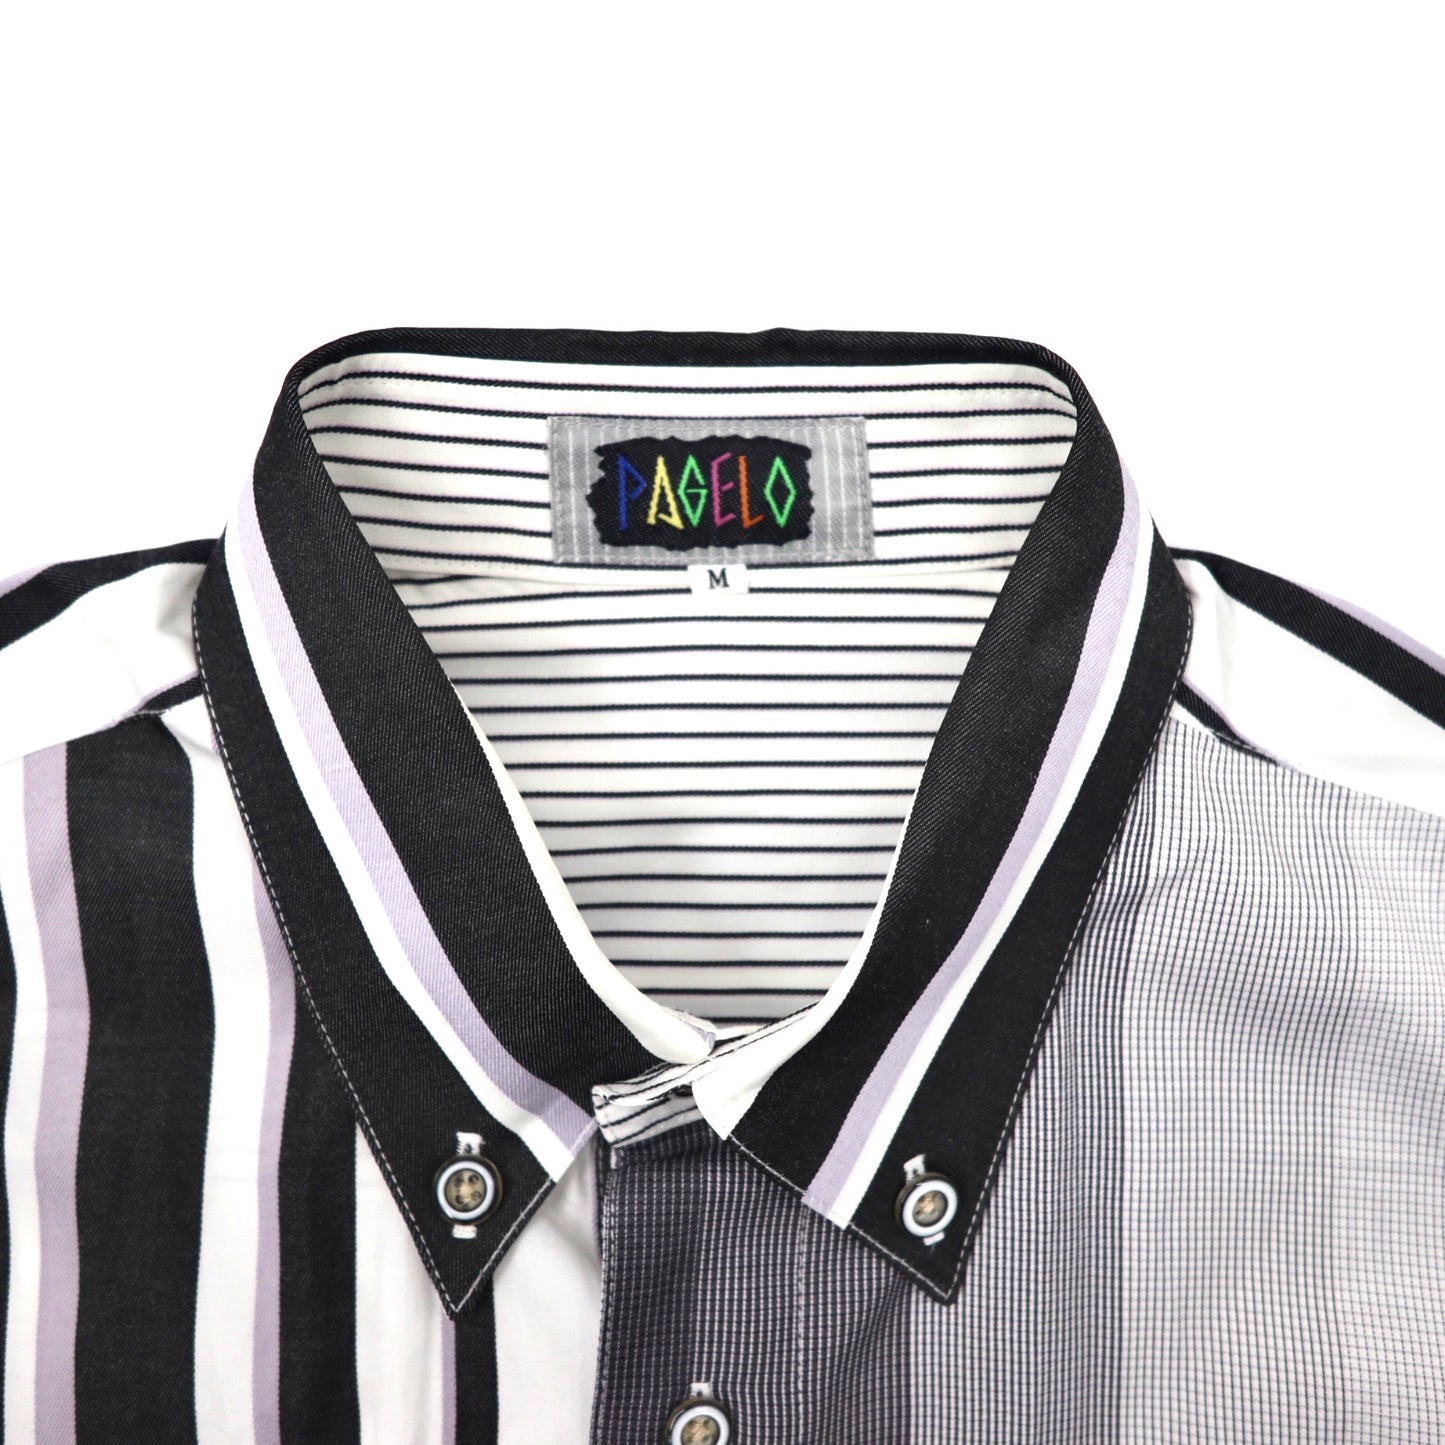 PAGELO ボタンダウンシャツ M グレー ストライプ クレイジーパターン